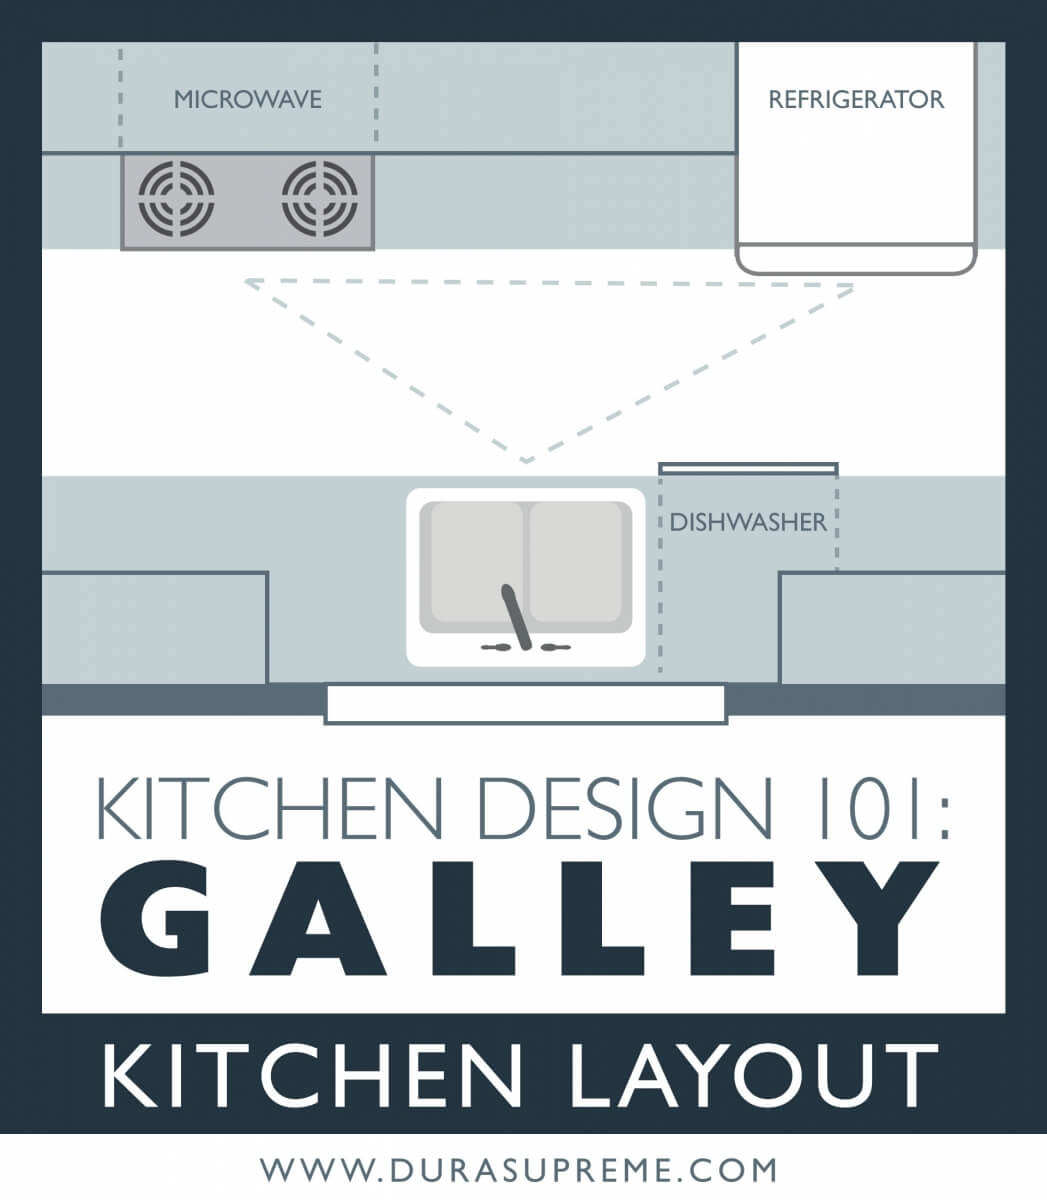 Kitchen Design 101 What is a Galley Kitchen Layout? Dura Supreme